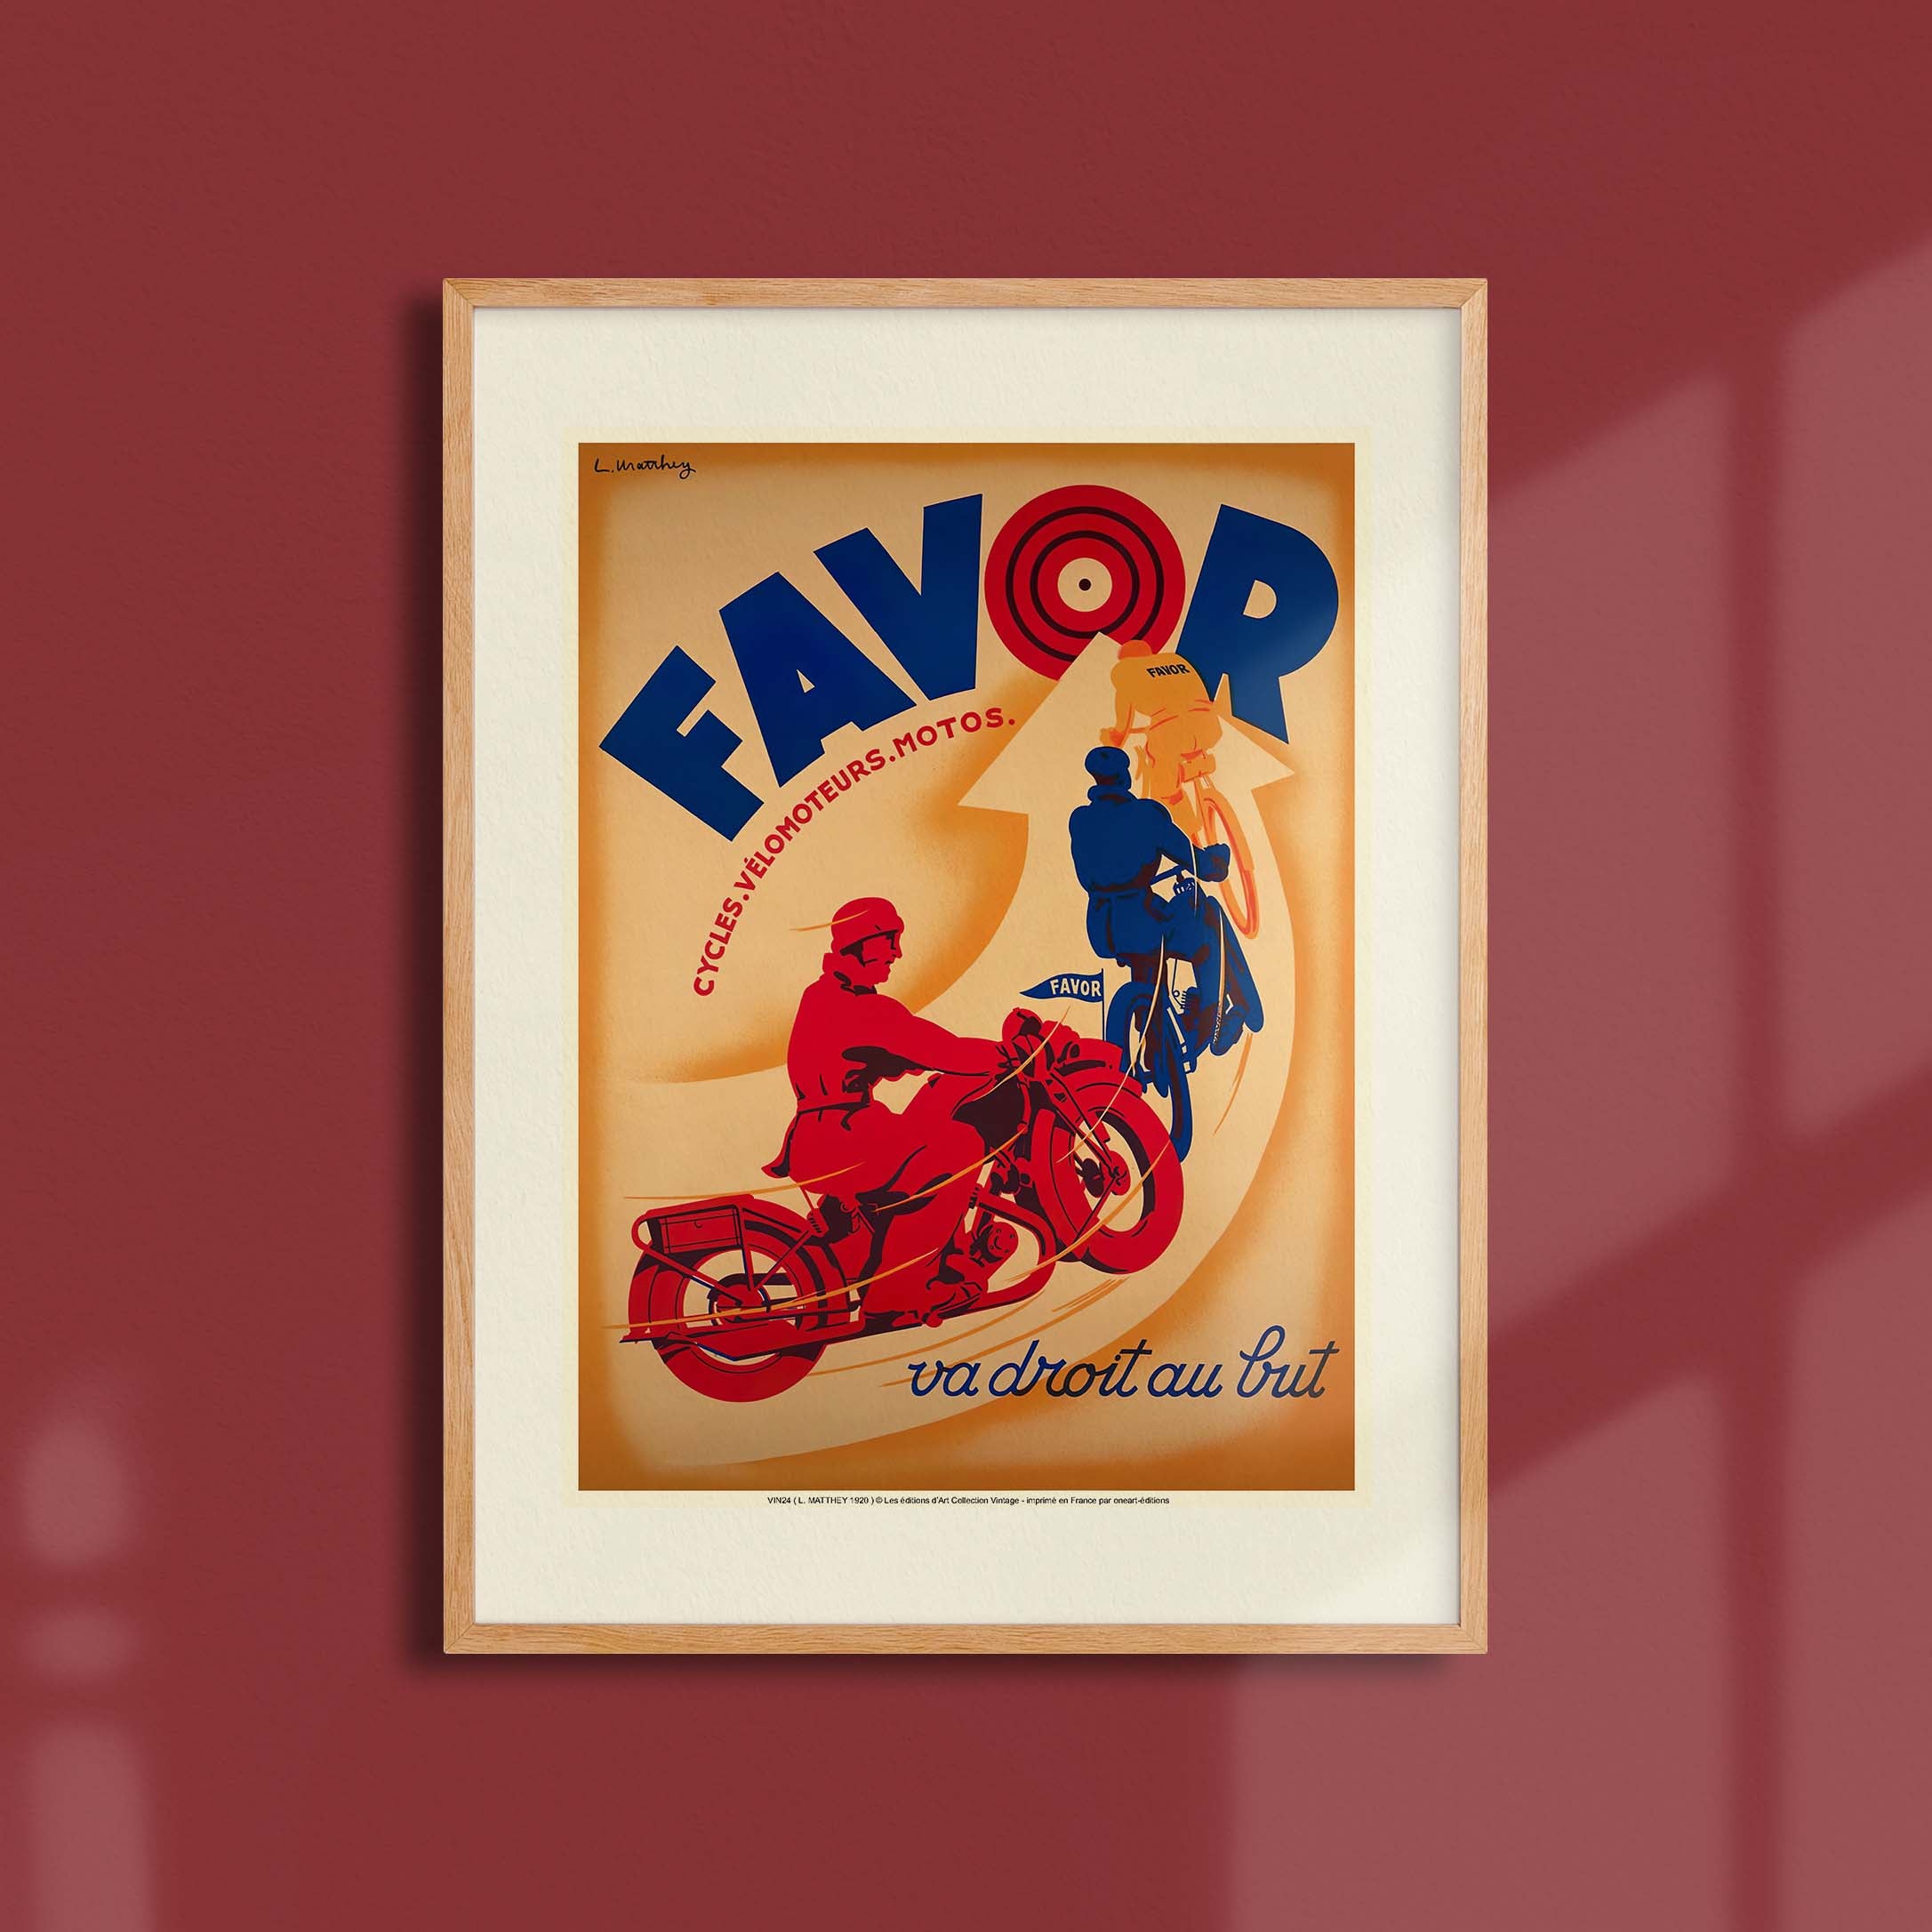 Affiche publicité vintage - Favor-oneart.fr